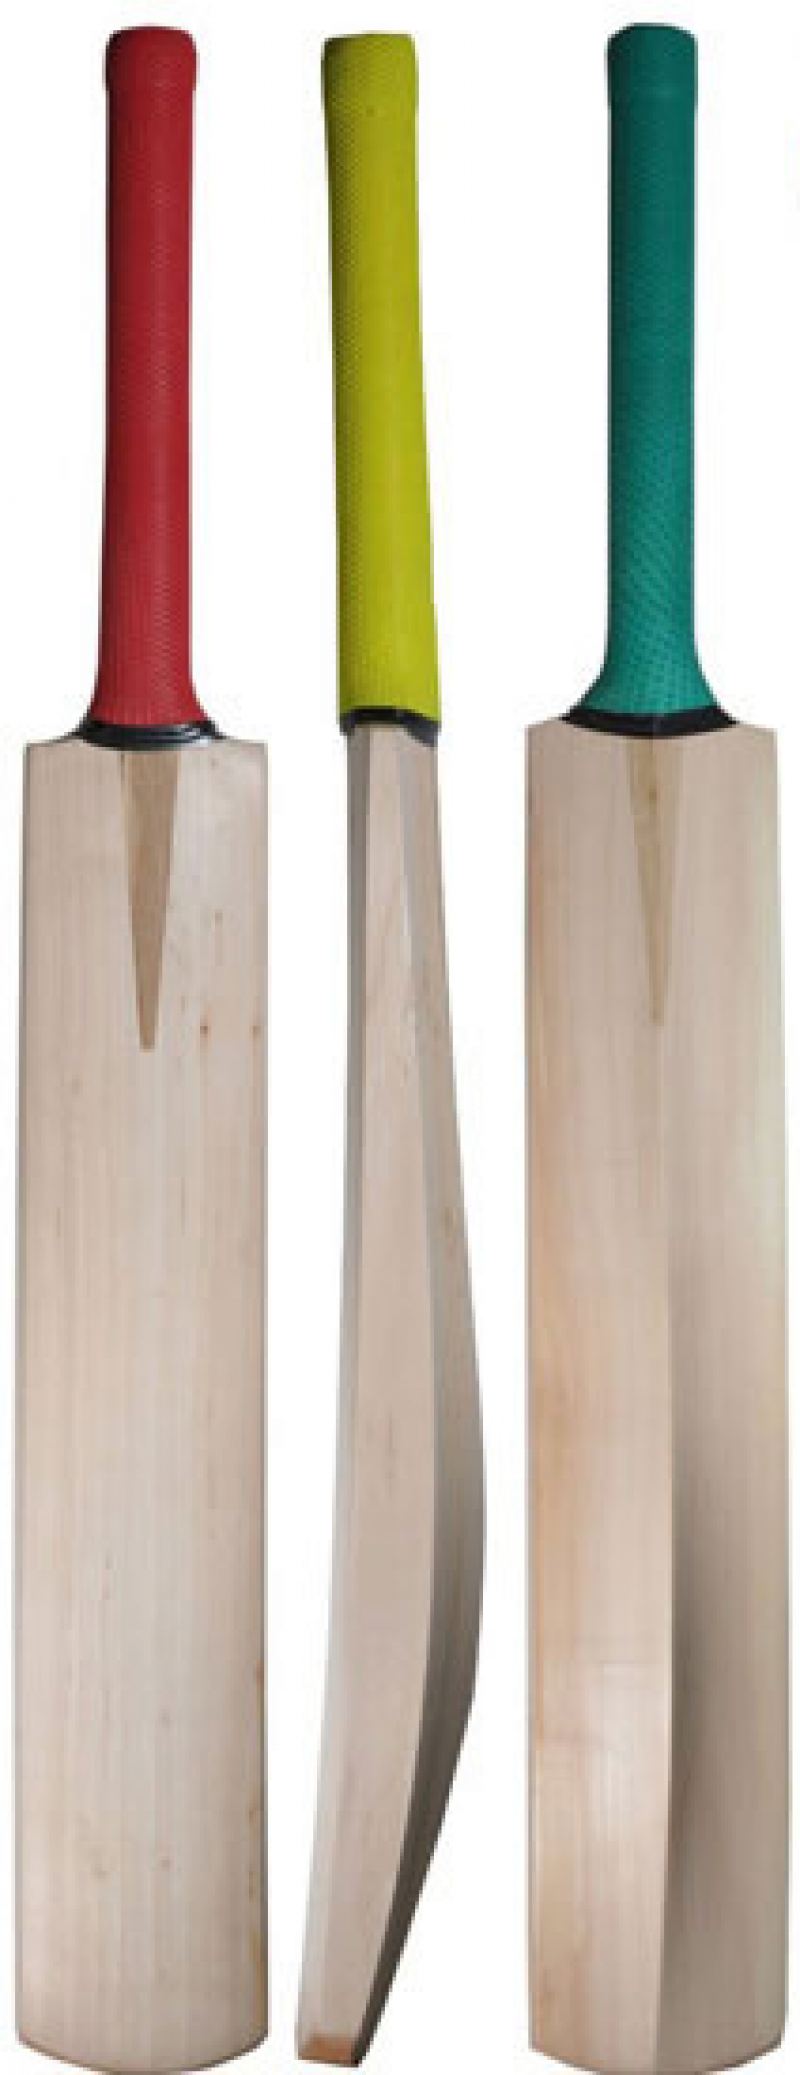 long 9 can Handle,Cricket Bat hand-made KASHMIR WILLOW grade1cricket bat